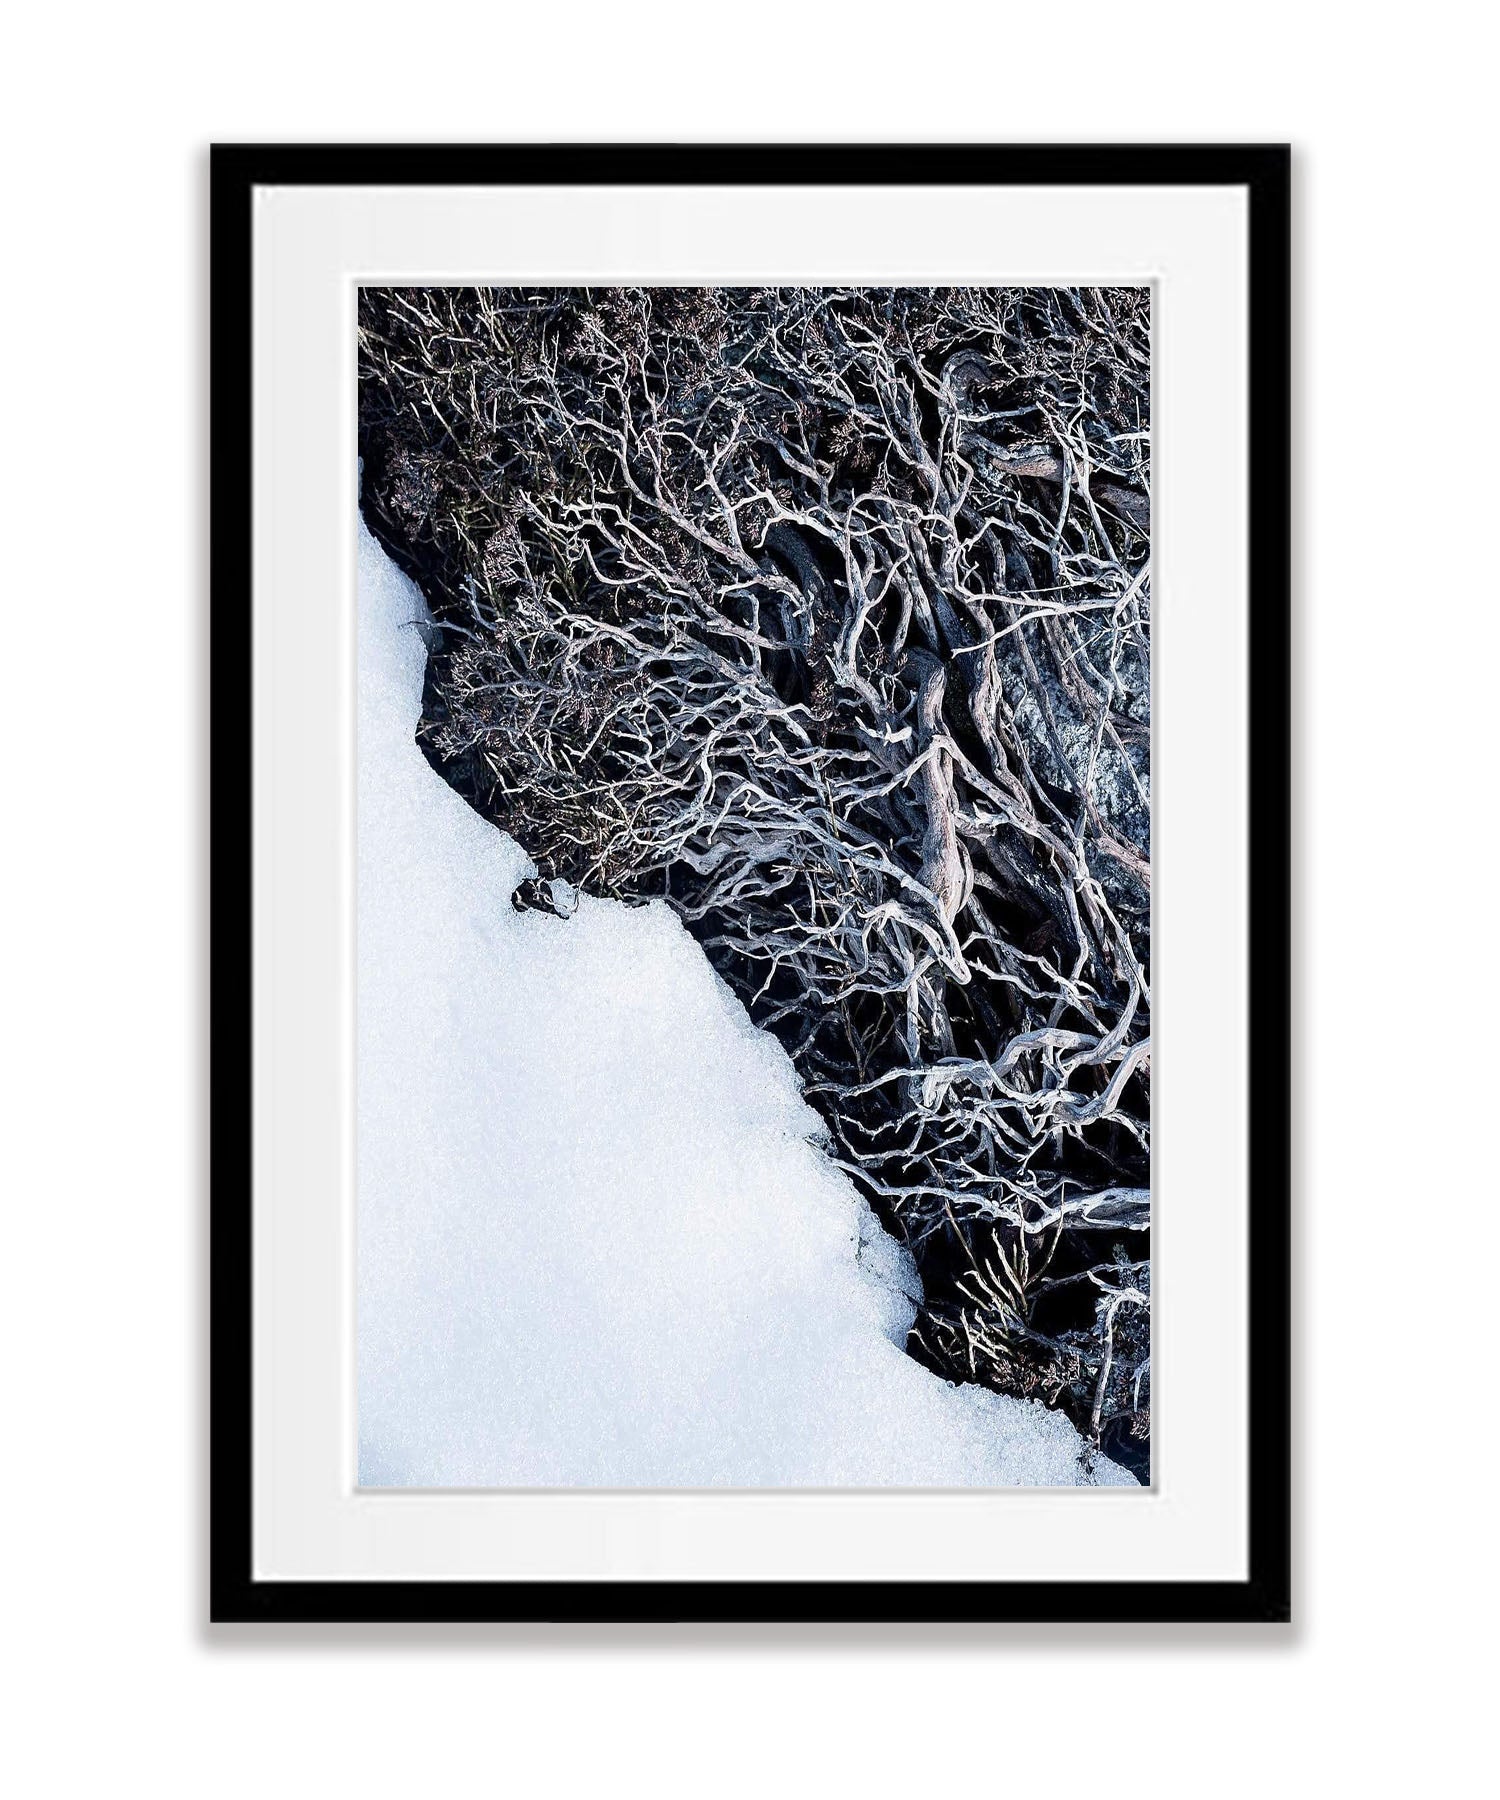 Micro detail - Snowy Mountains NSW